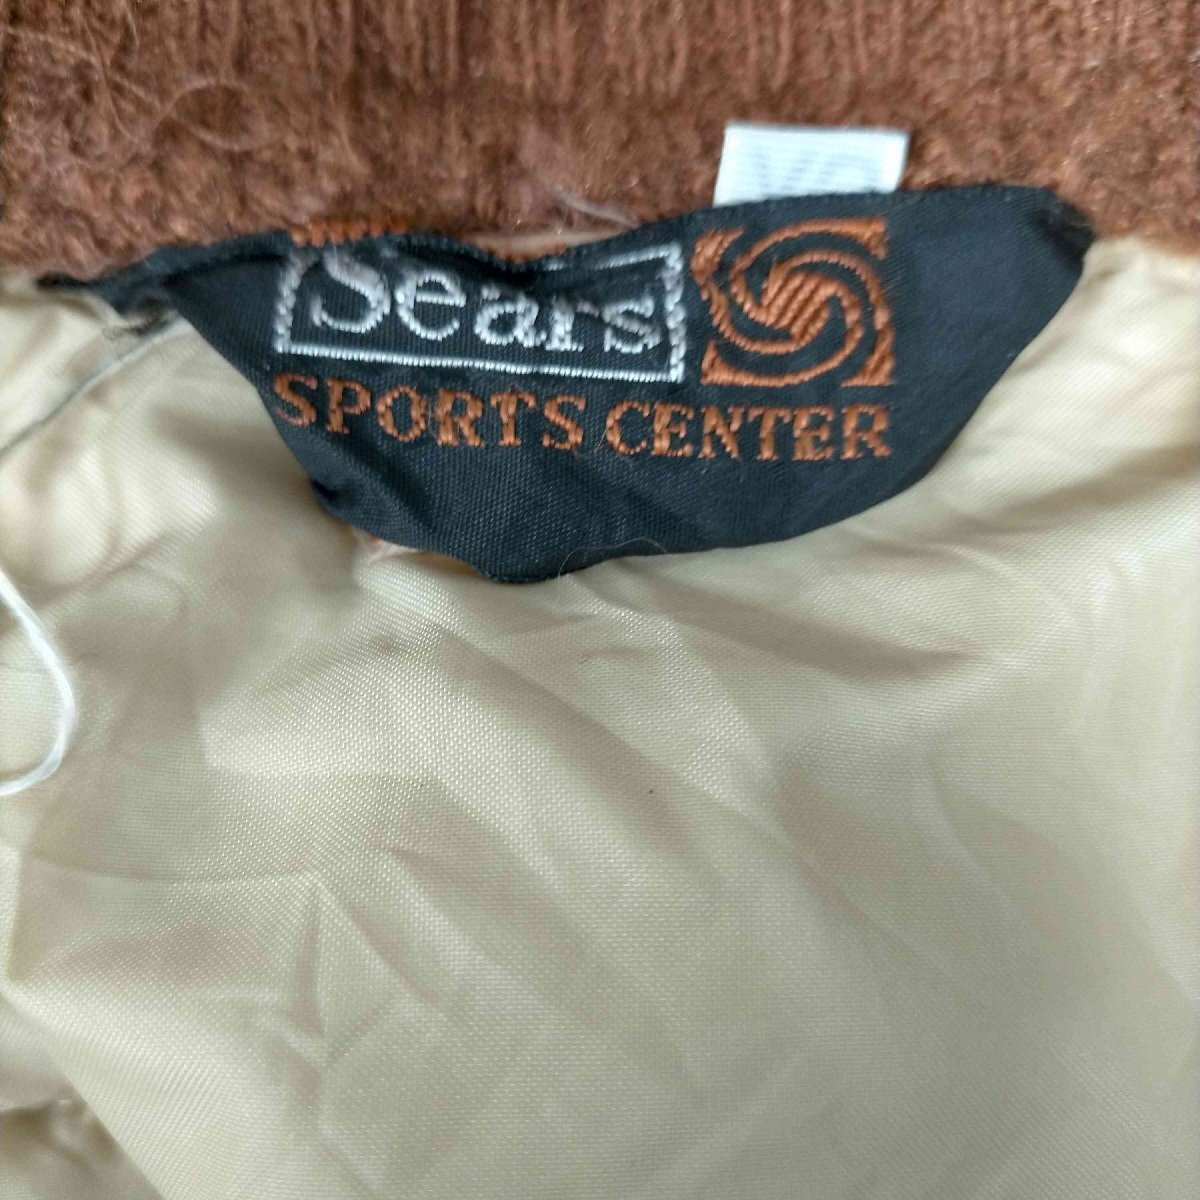 Sears(シアーズ) 70-80S Sports Center 三角タグ スナップボタン 中綿 ベスト 中古 古着 0251_画像6